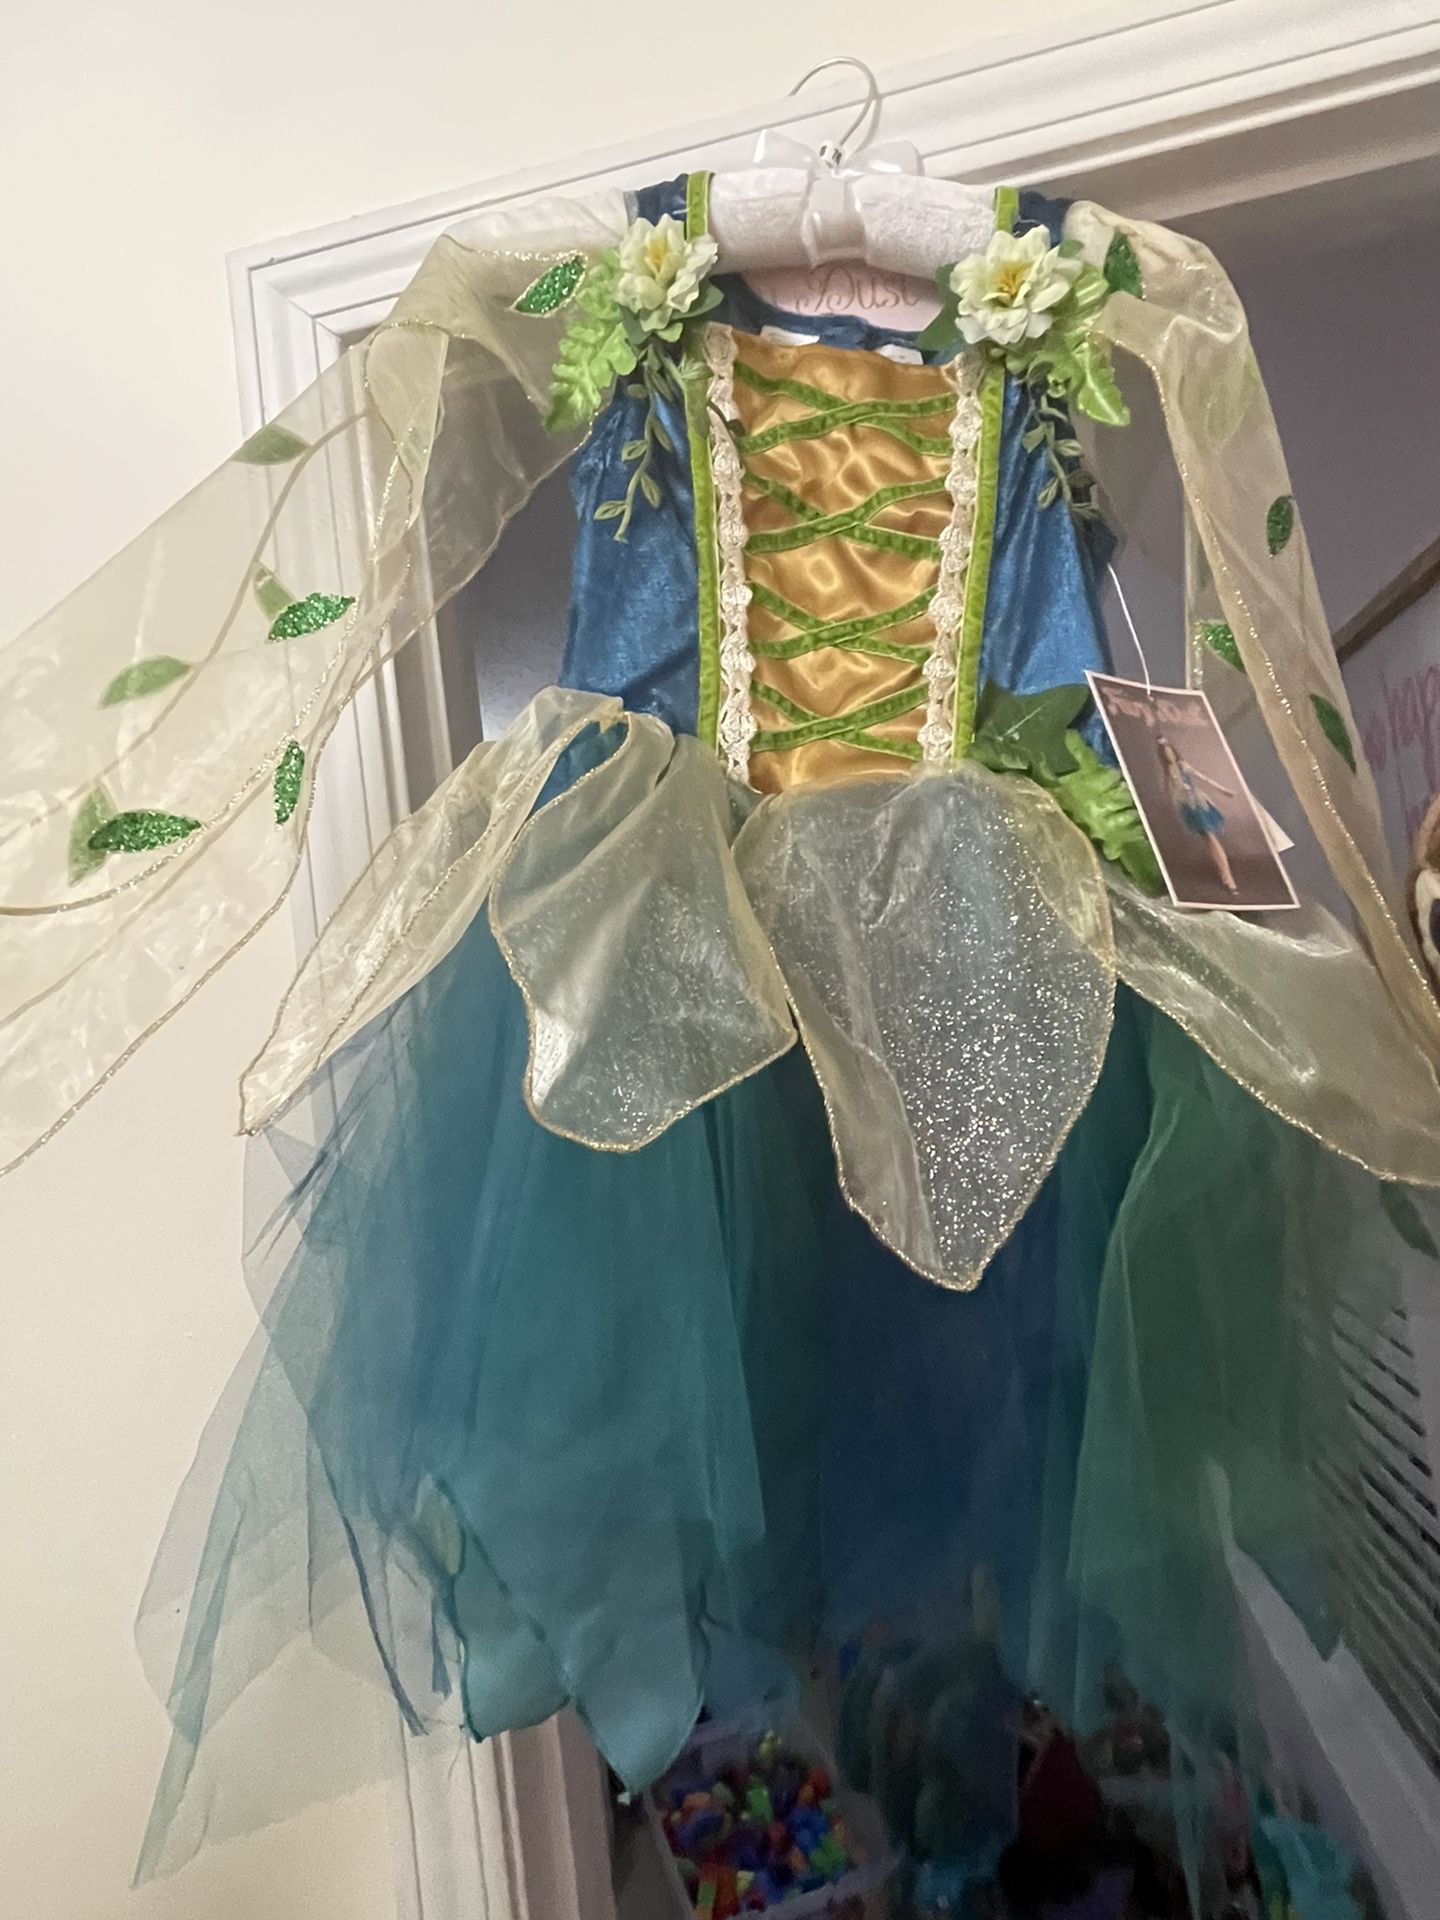 7/8 Fairy Costume